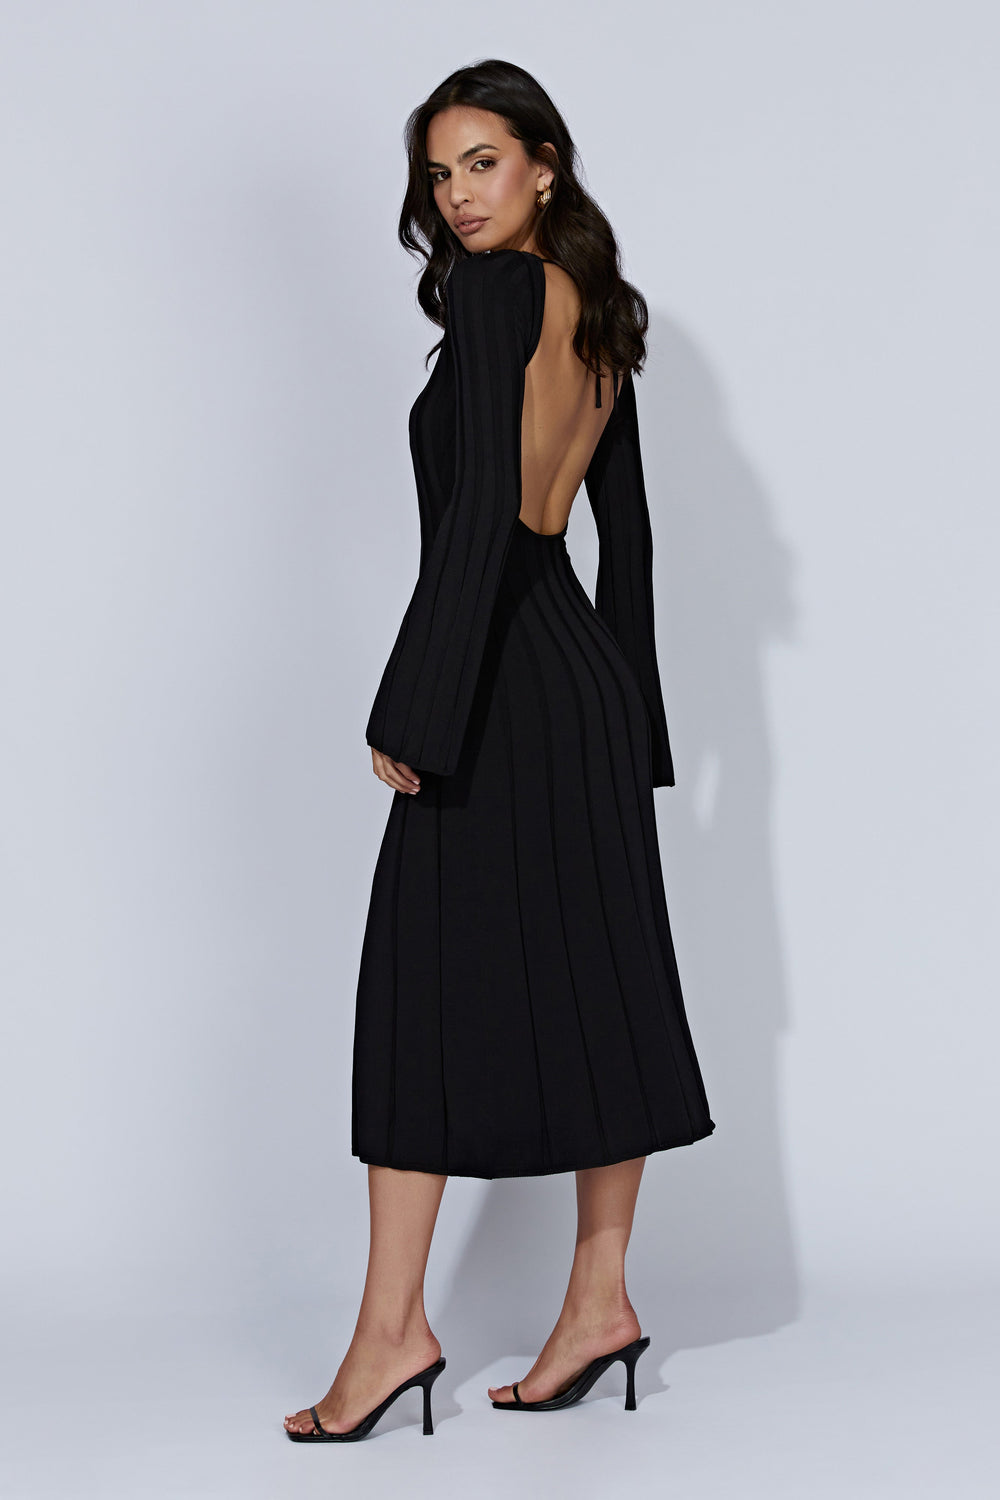 Juniper Flare Sleeve Knit Midi Dress - Black